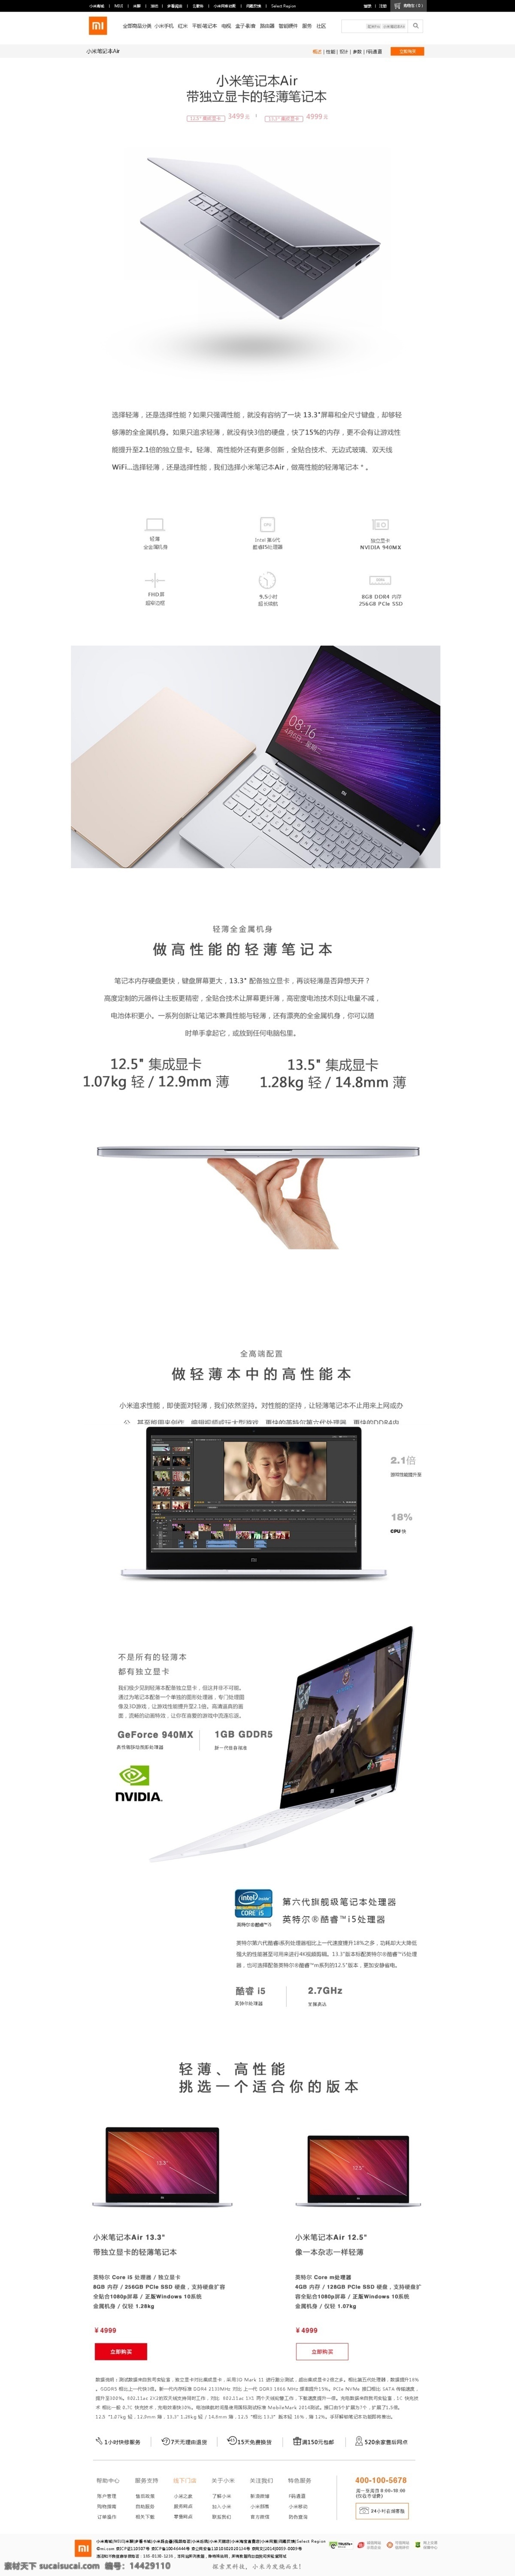 小米官网首页 小米 官网 首页 米粉 手机 科技 web 界面设计 中文模板